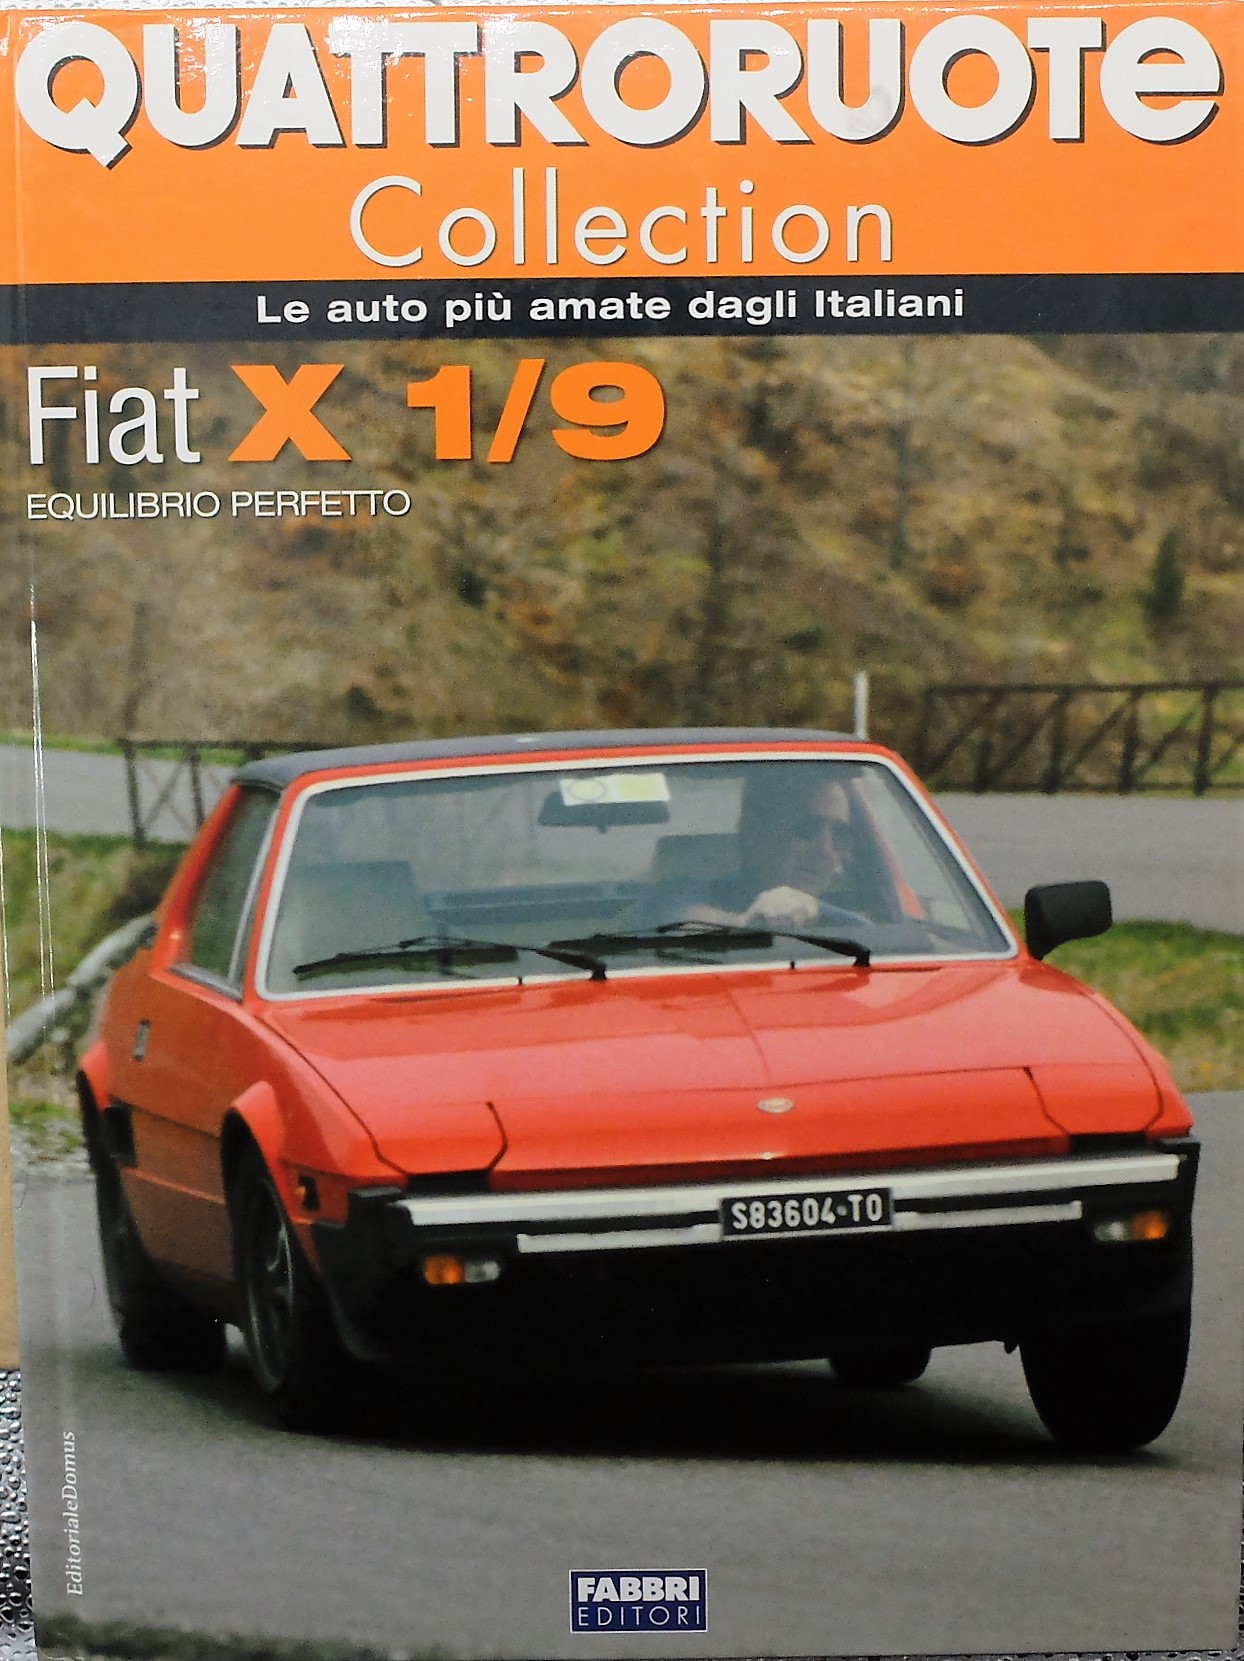 Quattroruote Collection FIAT X 1/9 ROUGE miniature voiture 1:24 livre livre